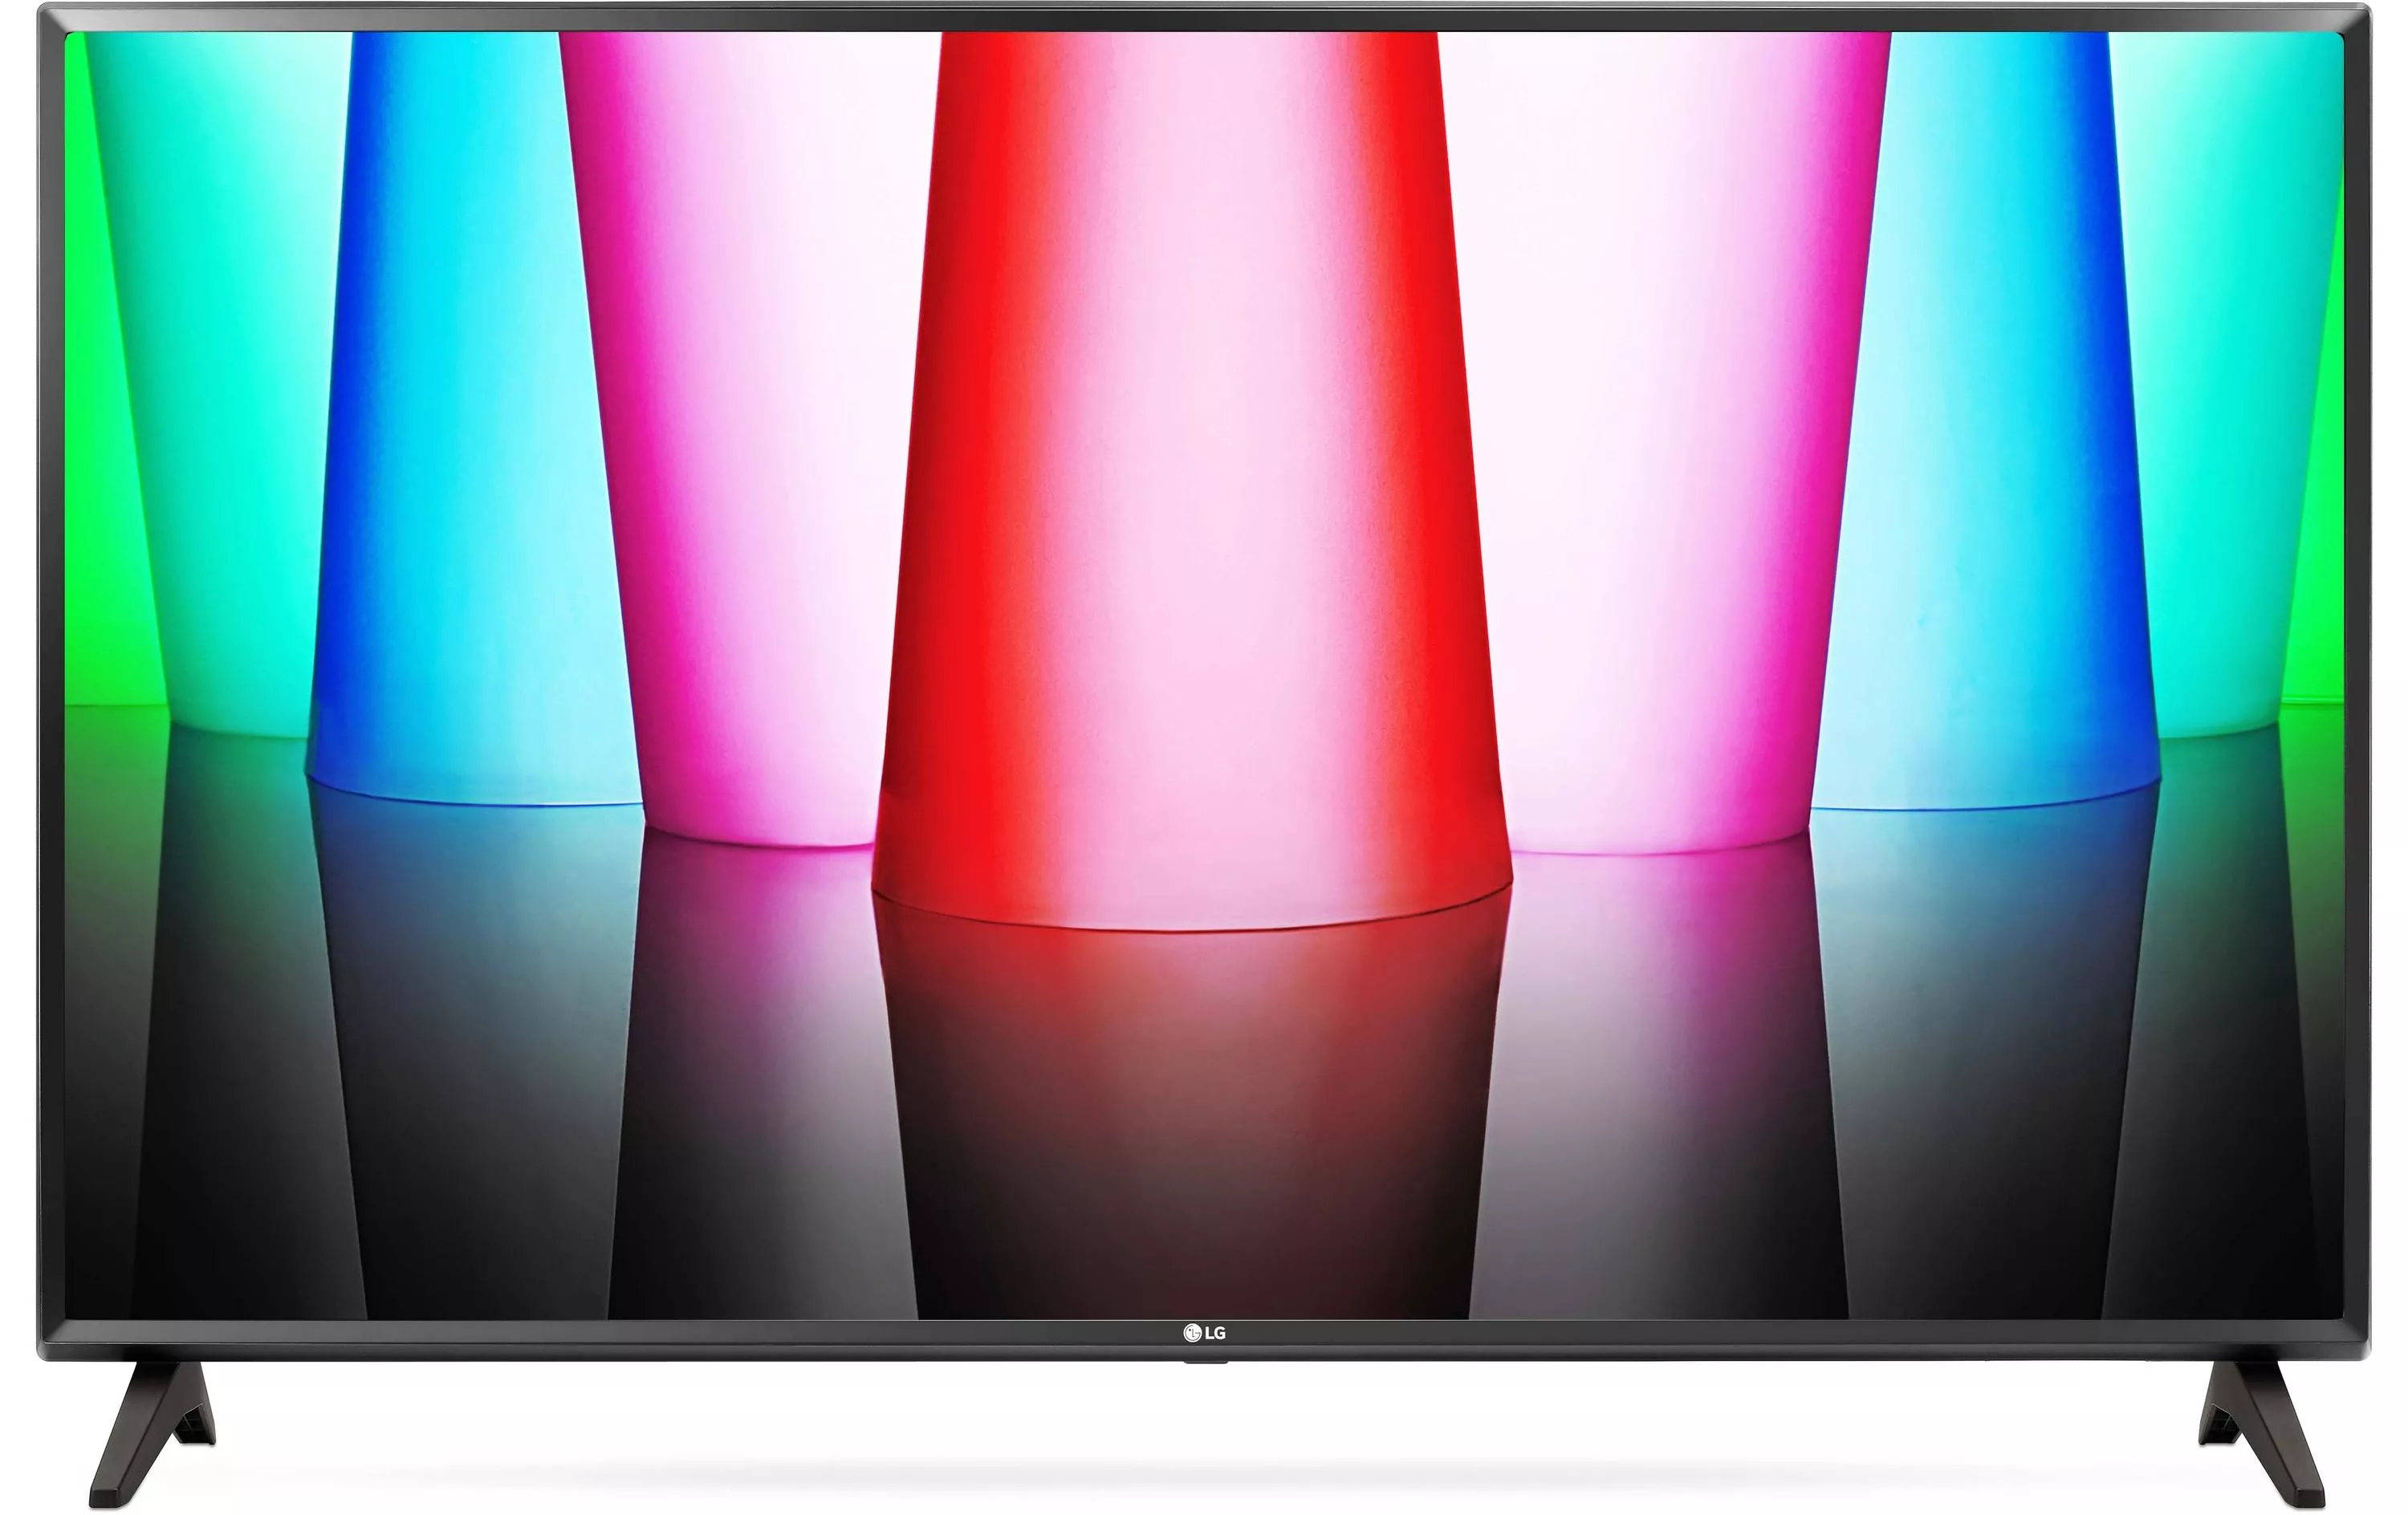 TV 32LQ570B6 32\", 1366 x 768 (WXGA), LED-LCD